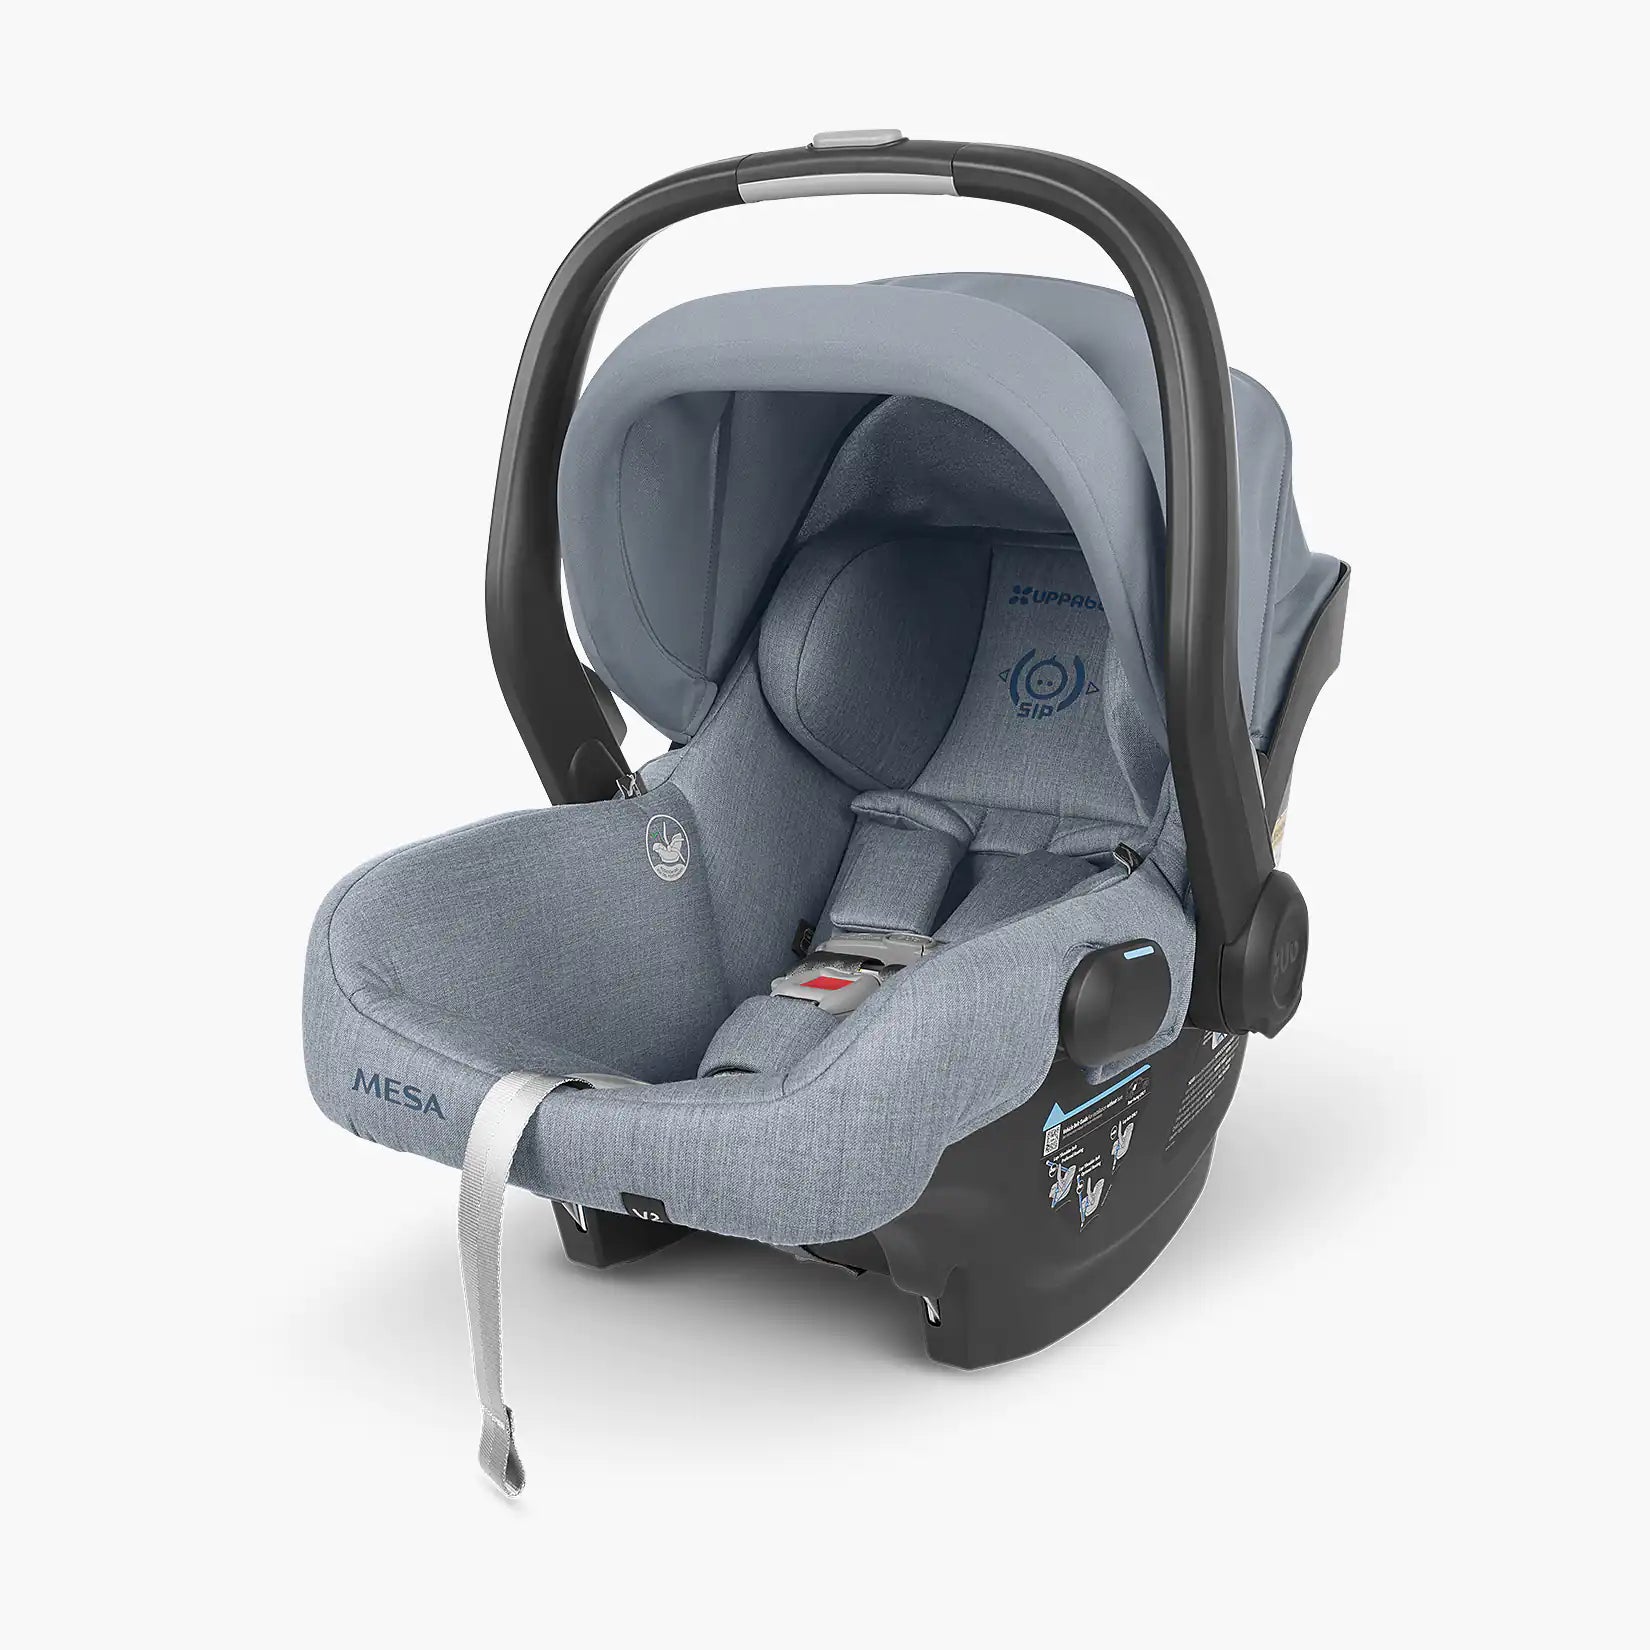 (NEW - See Details) UPPAbaby MESA V2 Lightweight Infant Car Seat - Gregory (Blue Melange)